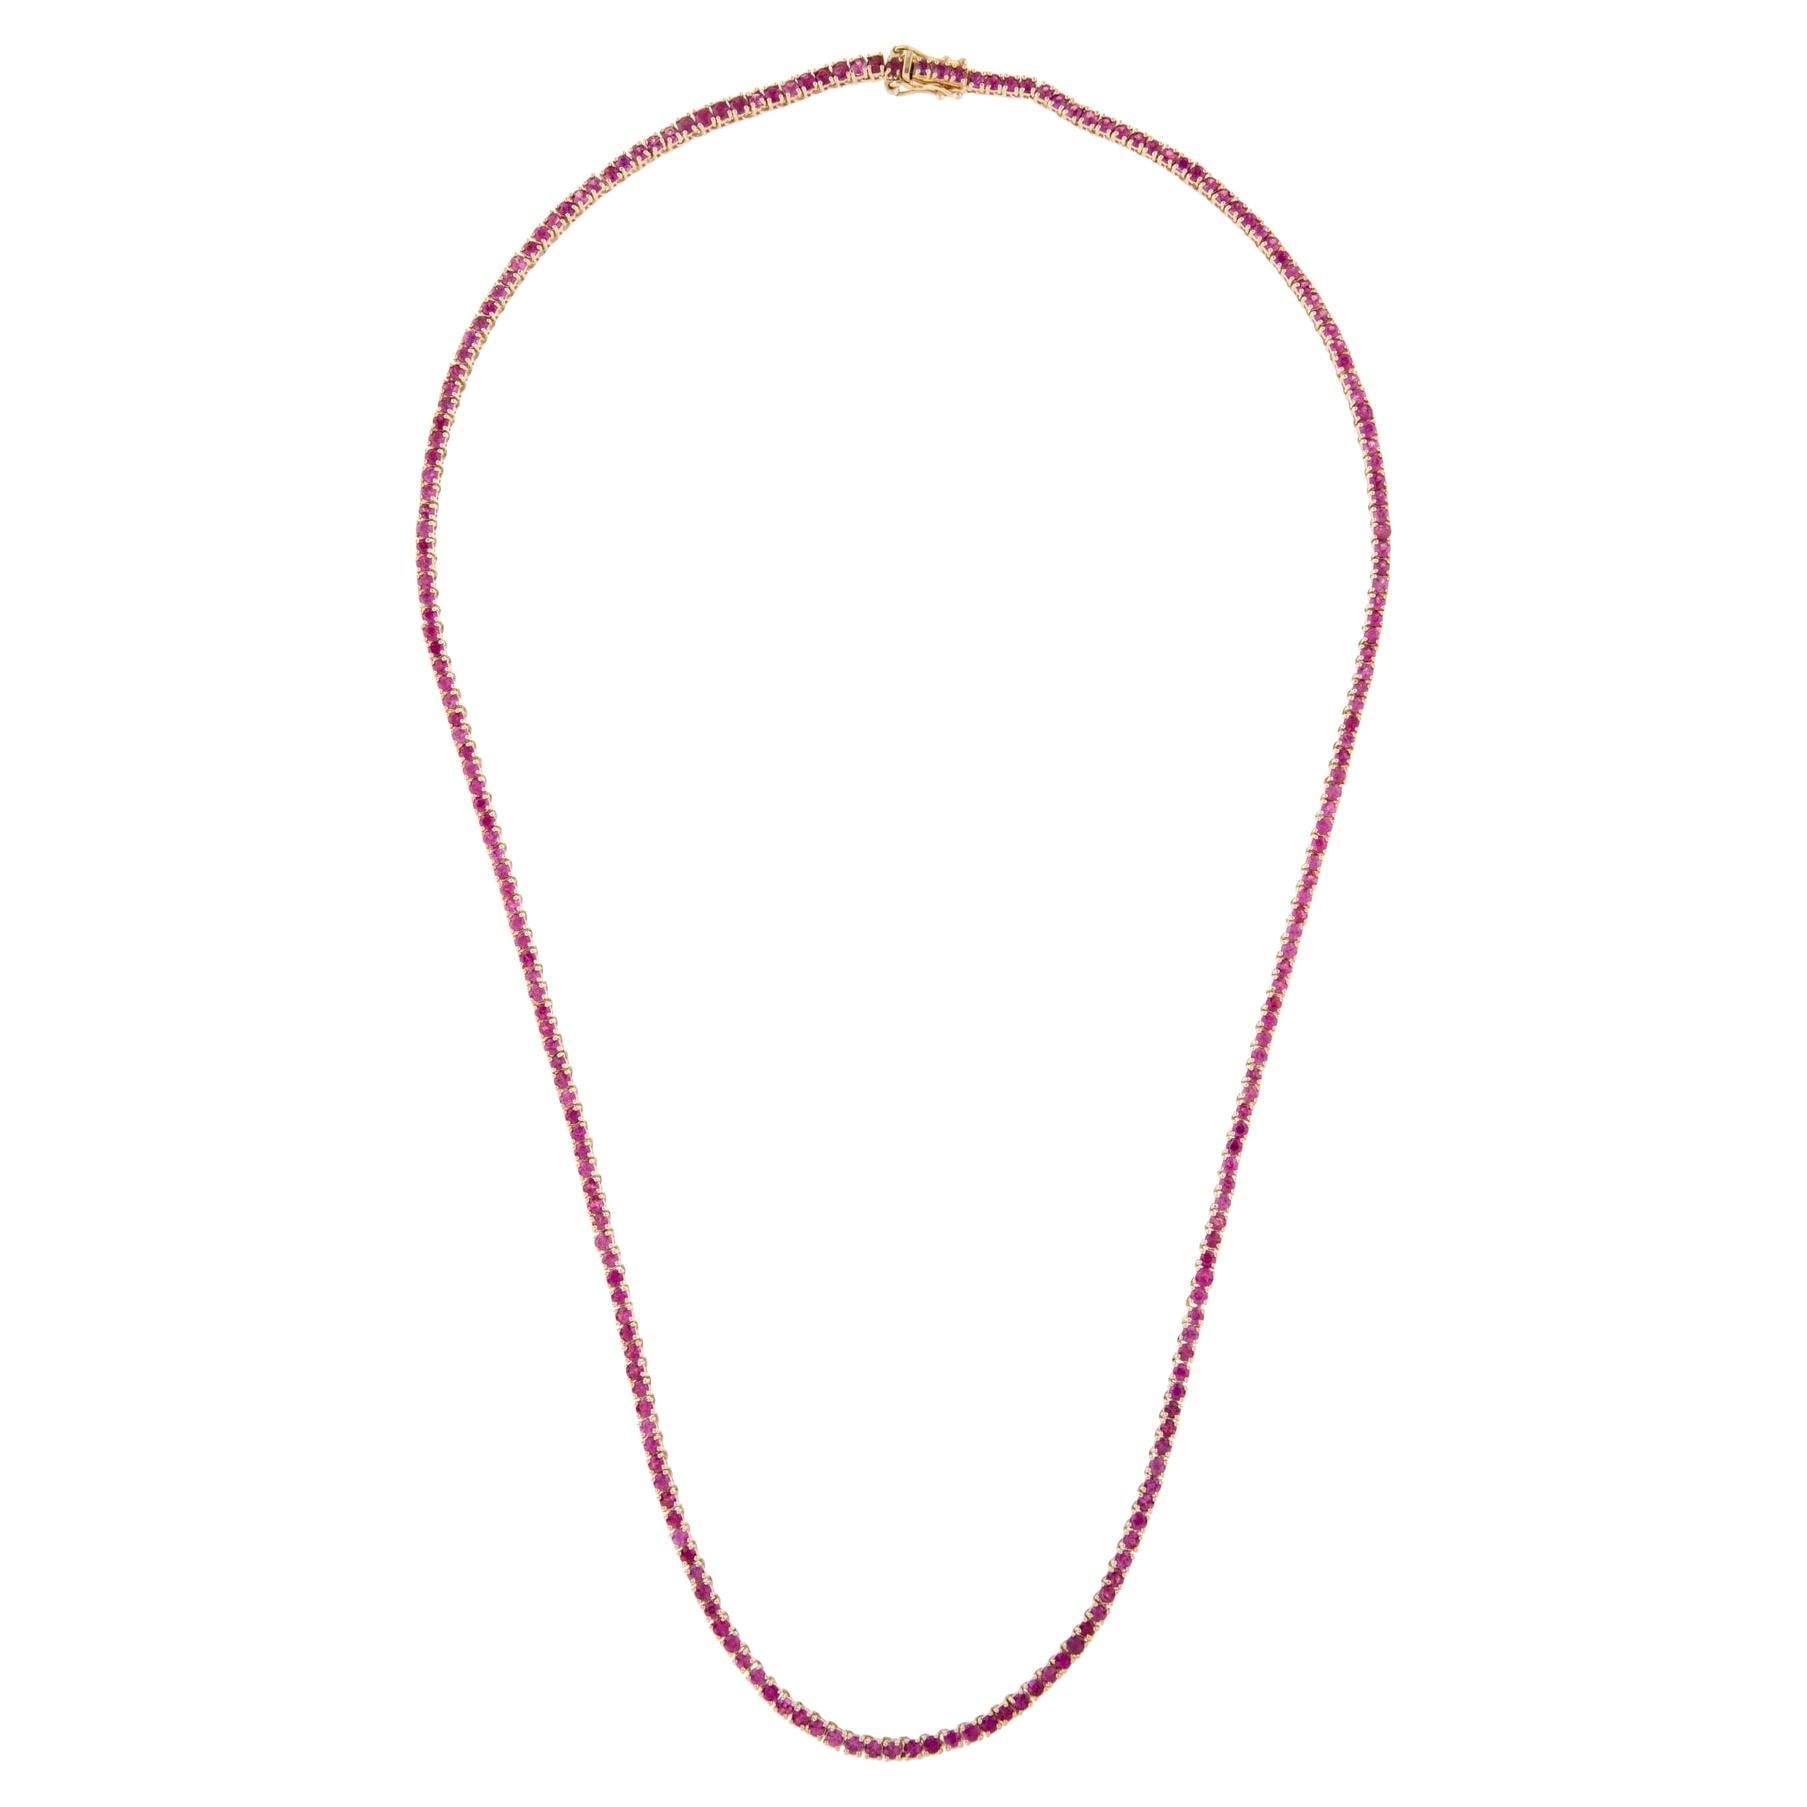 Collier à chaîne en rubis 14 carats 12,15 ctw - Pièce de joaillerie exquise pour le style glamour